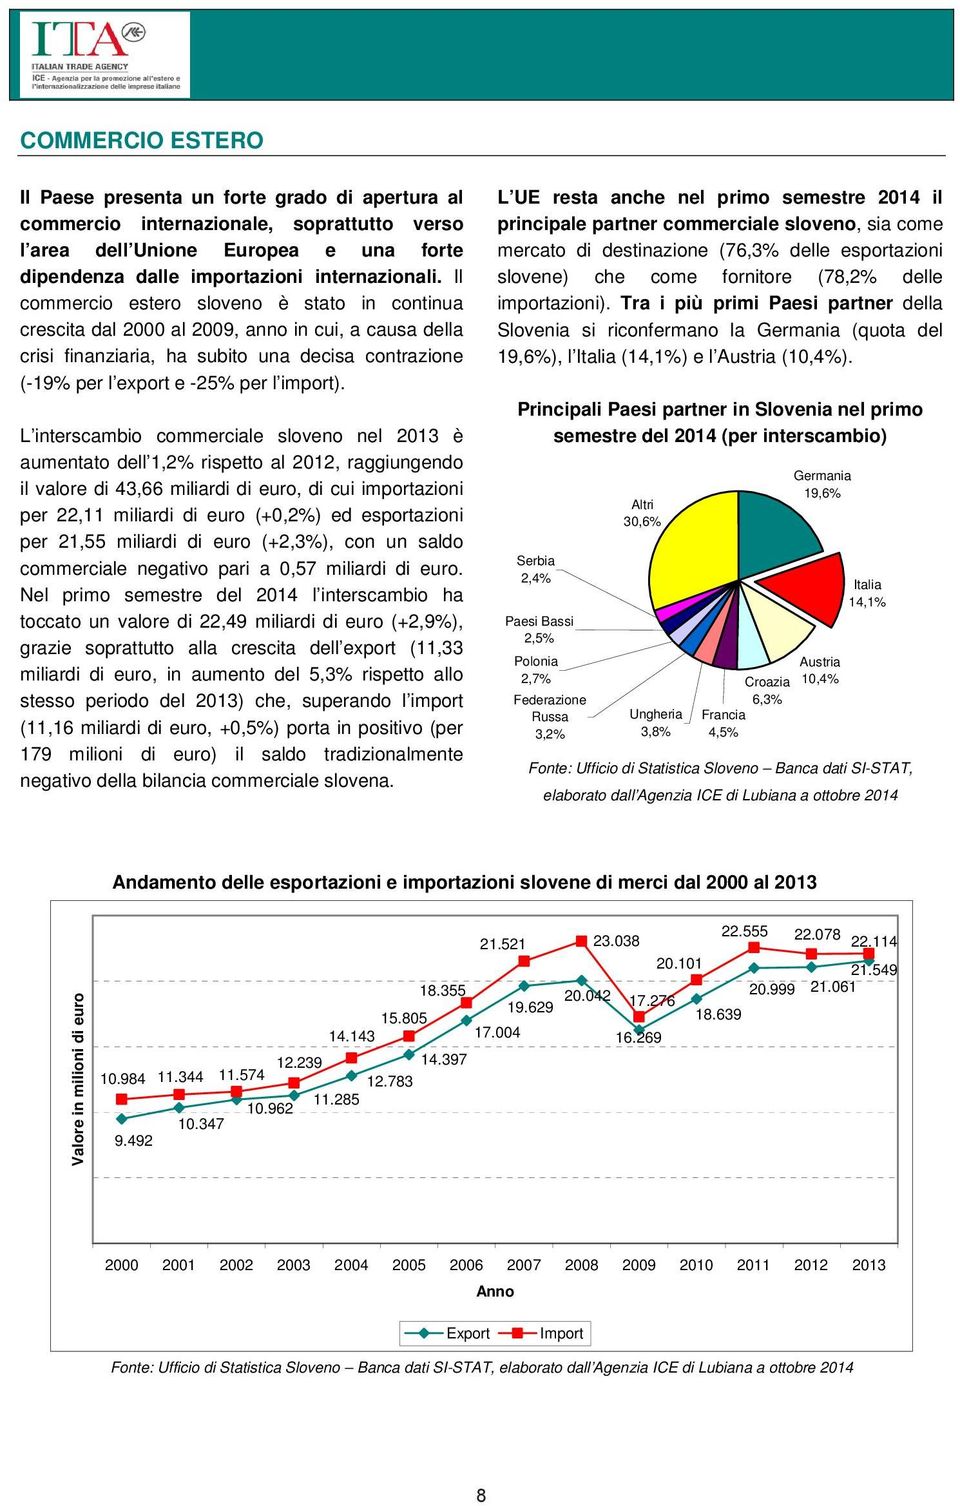 L interscambio commerciale sloveno nel 2013 è aumentato dell 1,2% rispetto al 2012, raggiungendo il valore di 43,66 miliardi di euro, di cui importazioni per 22,11 miliardi di euro (+0,2%) ed